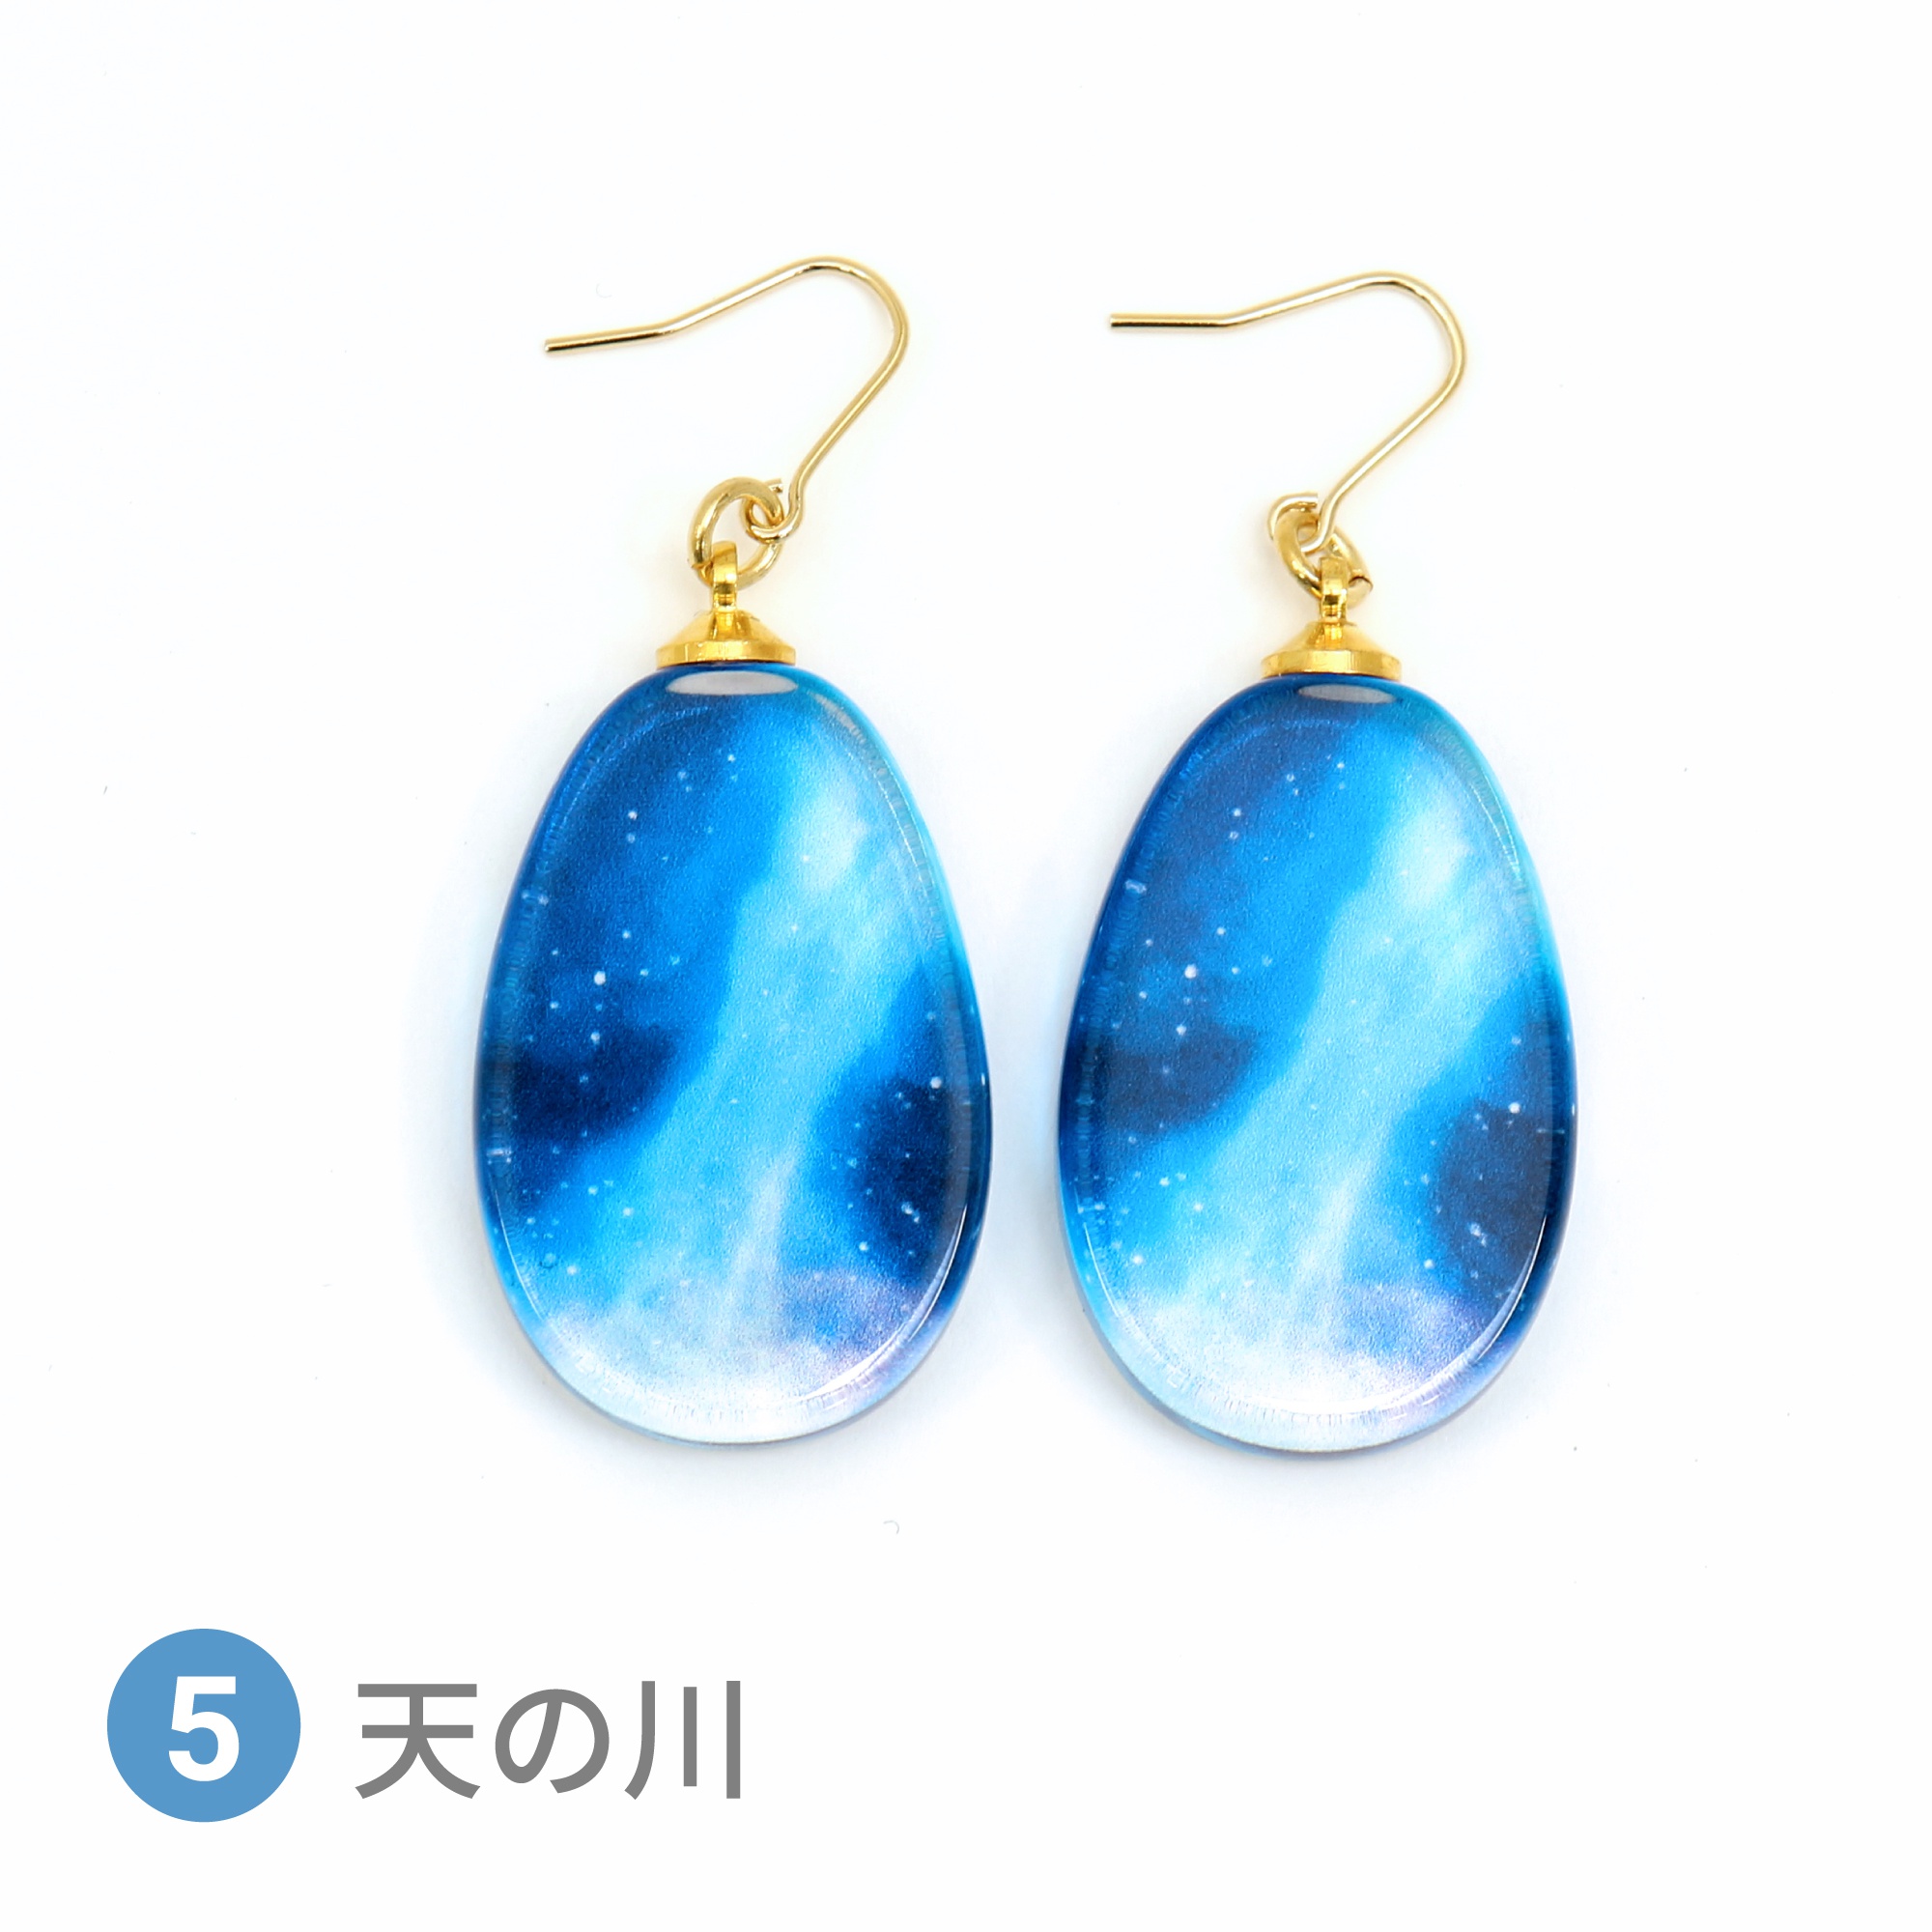 Glass accessories Pierced Earring STARRY SKY Milky Way drop shape